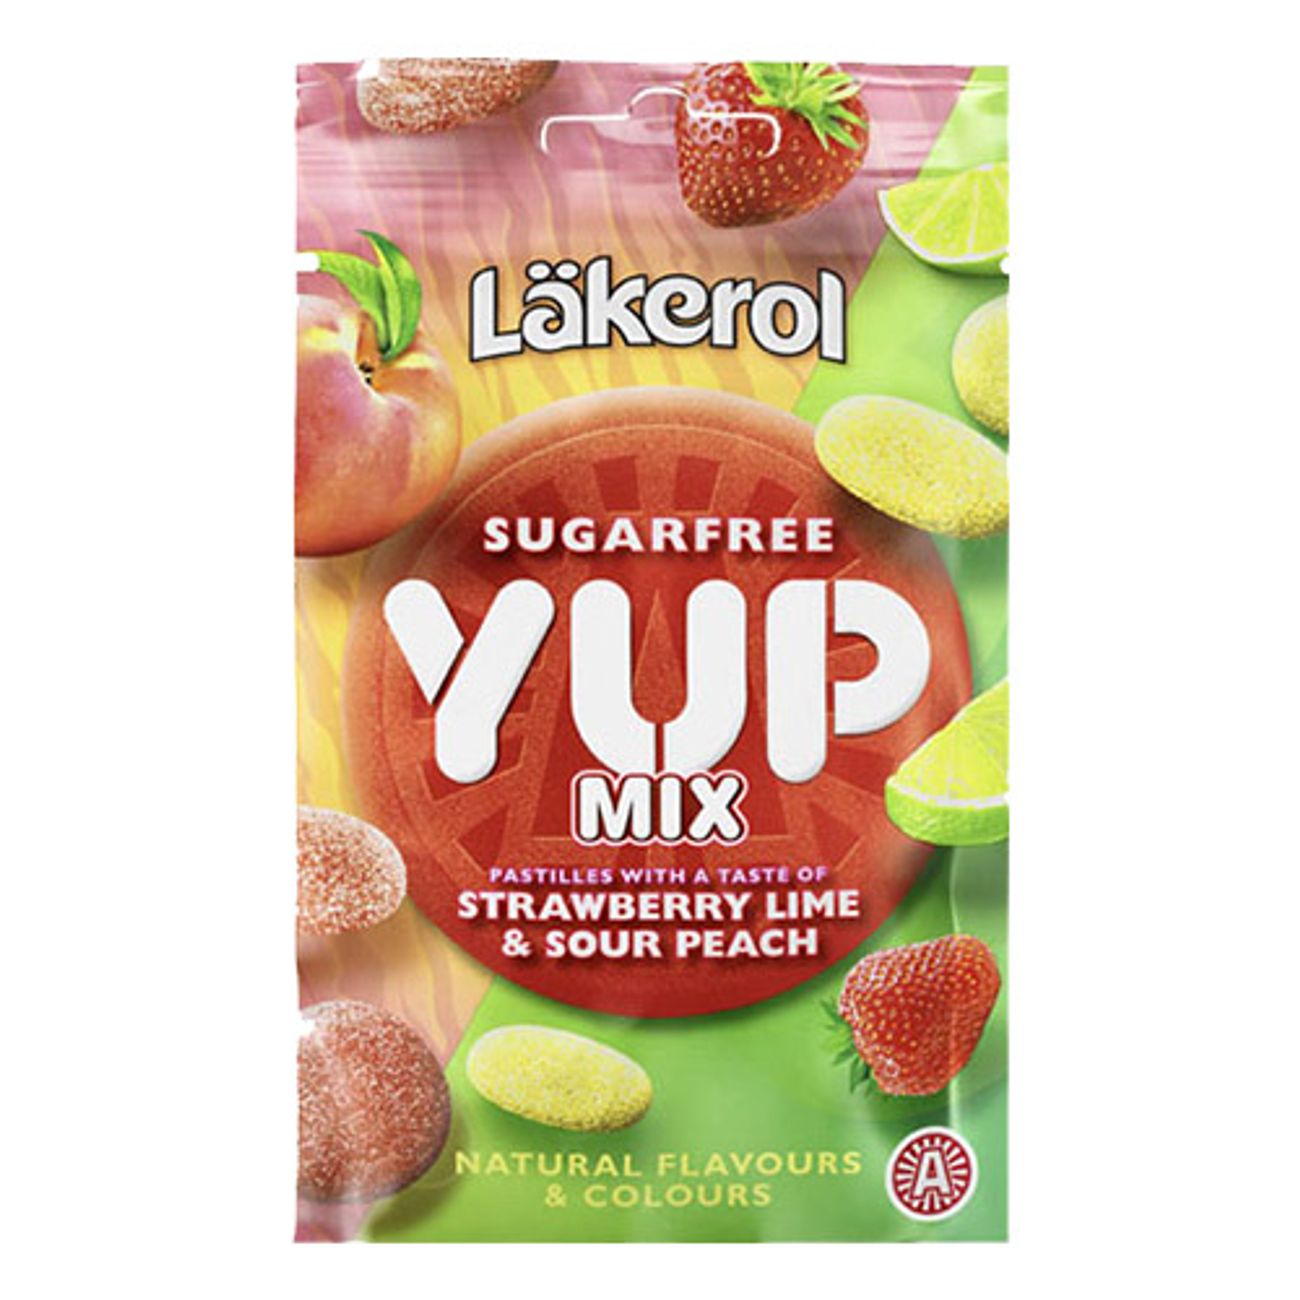 lakerol-yup-mix-sour-peach-strawblime--1